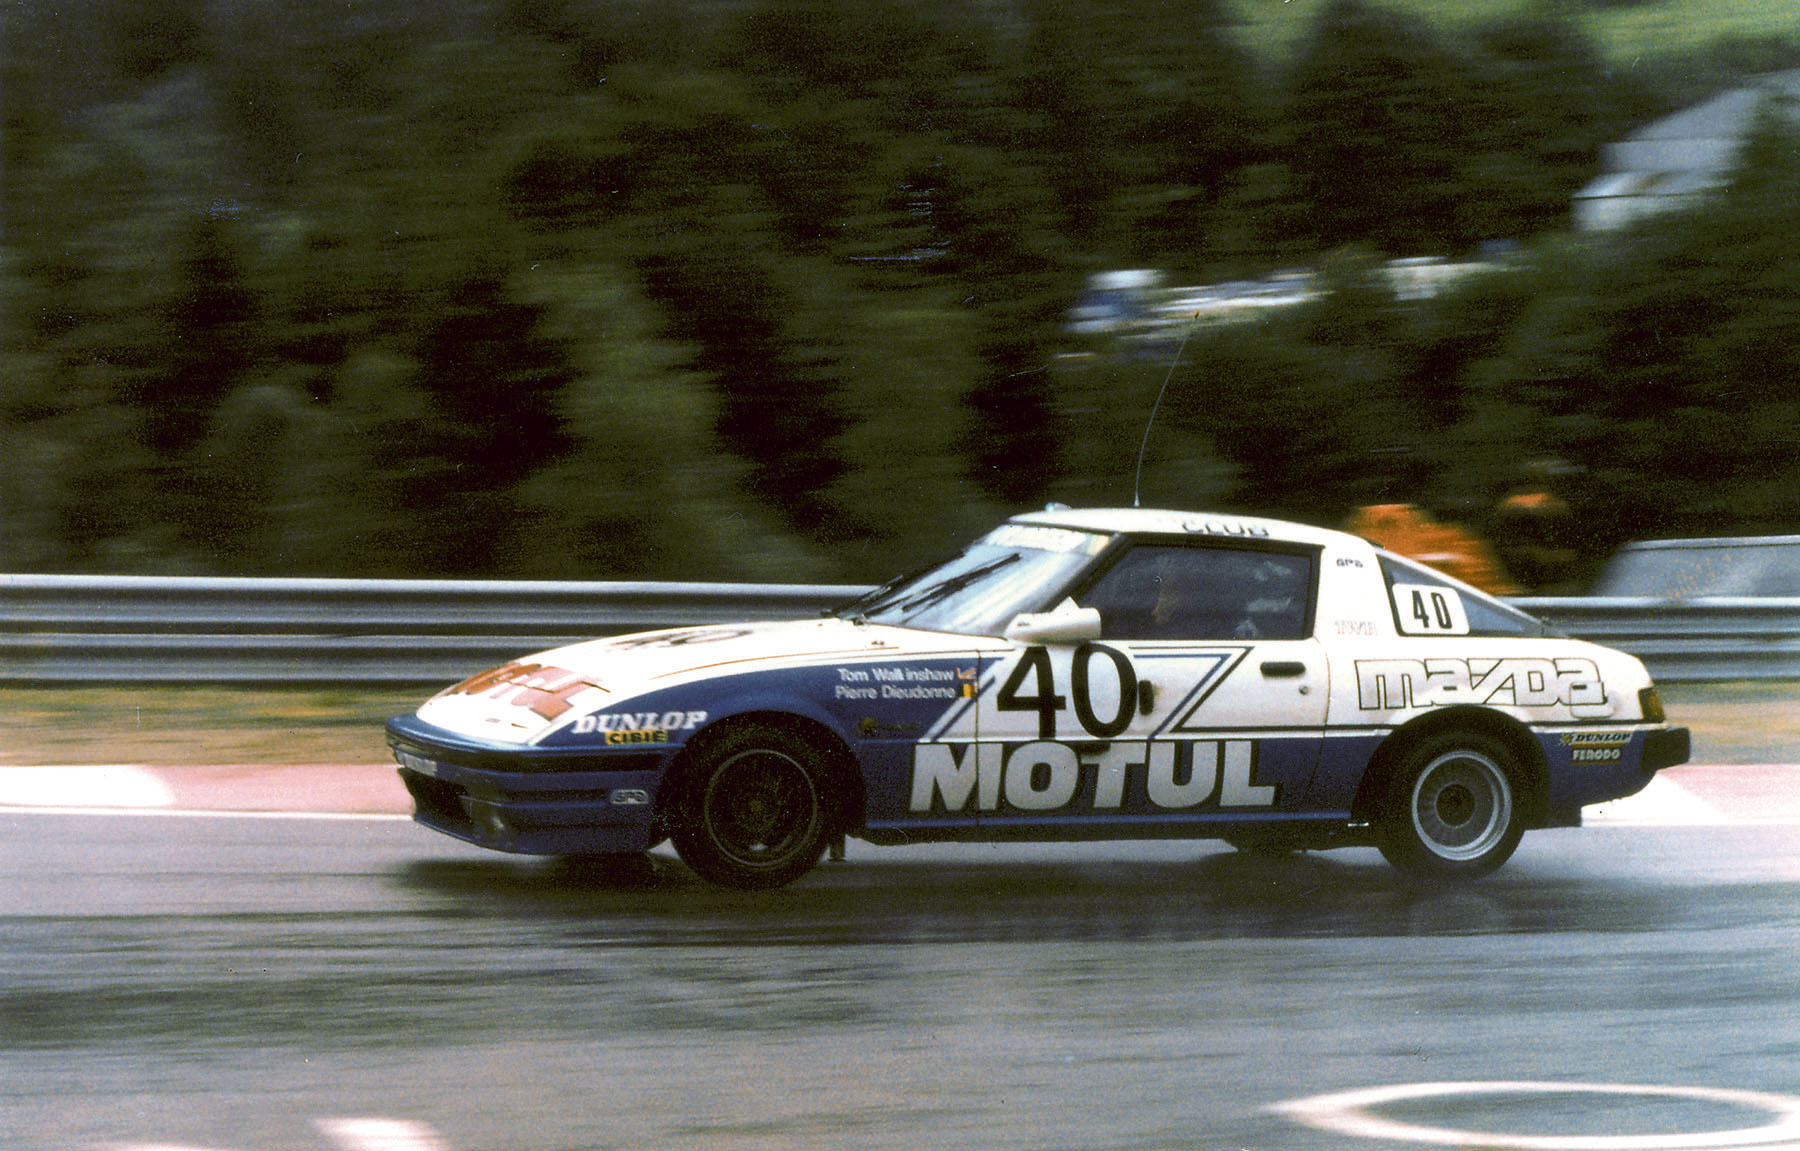 Mazda_RX-7_Spa_1981